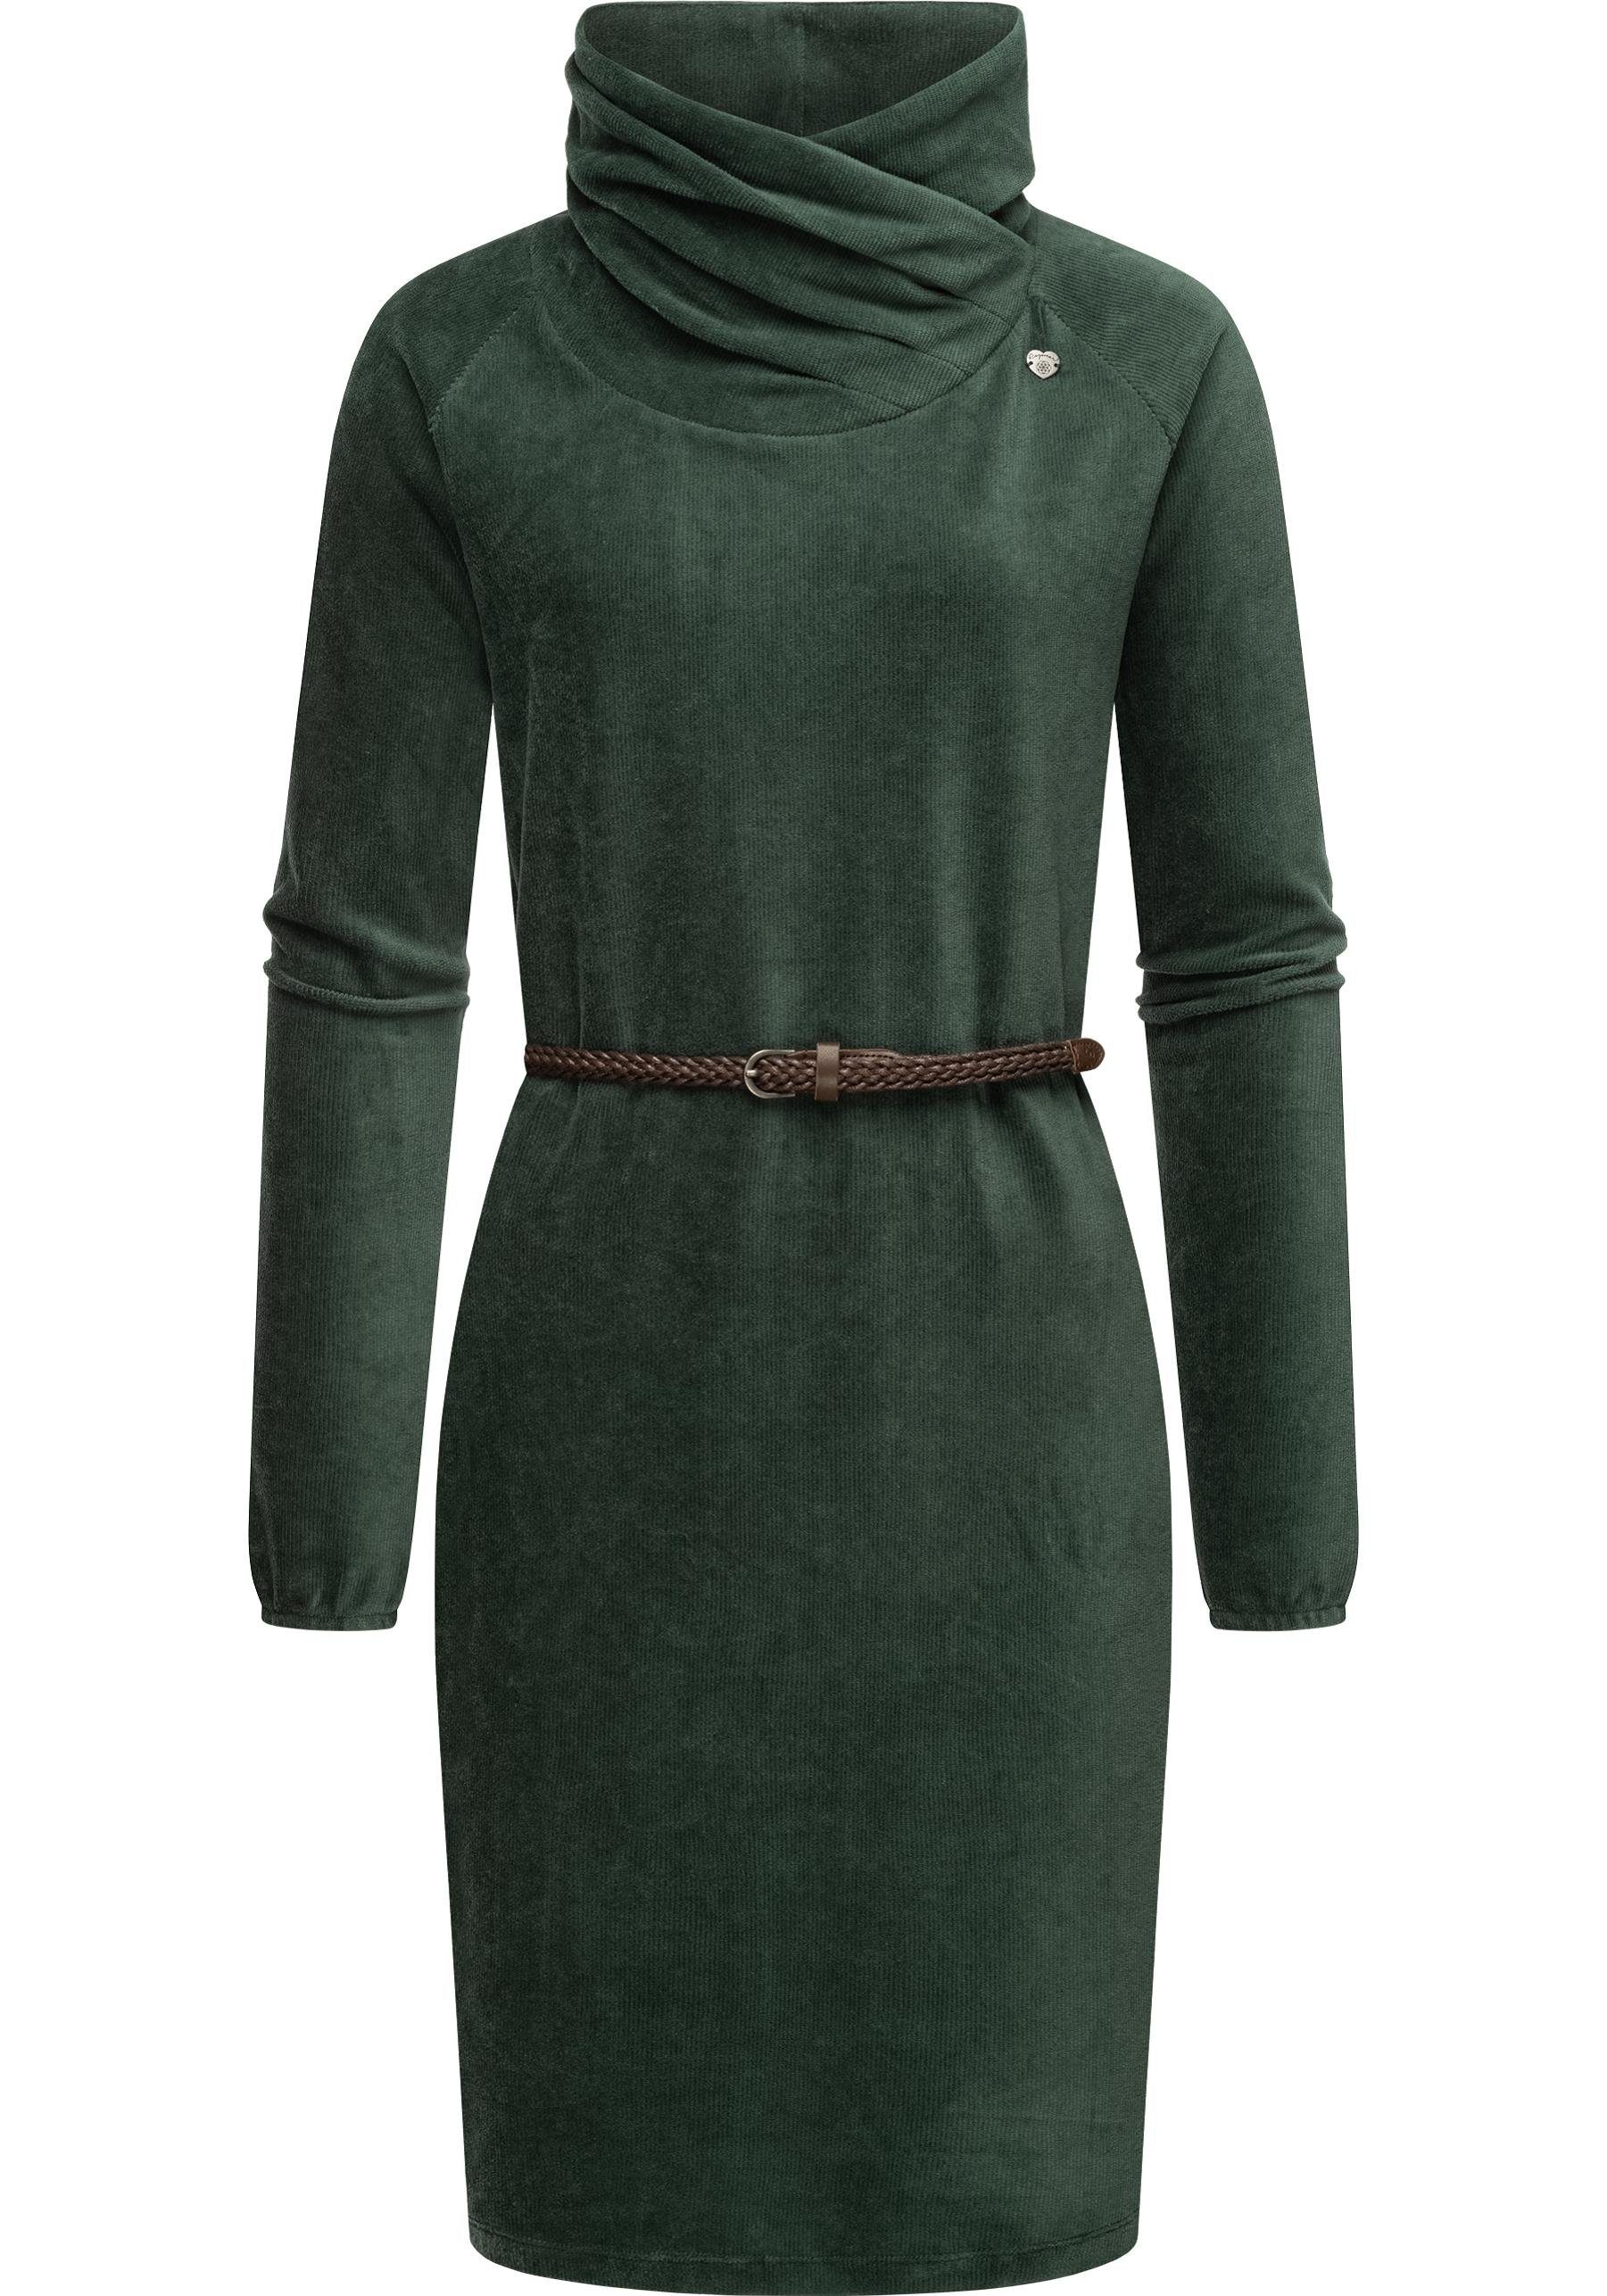 Grüne Sweatkleider für Damen online kaufen | OTTO